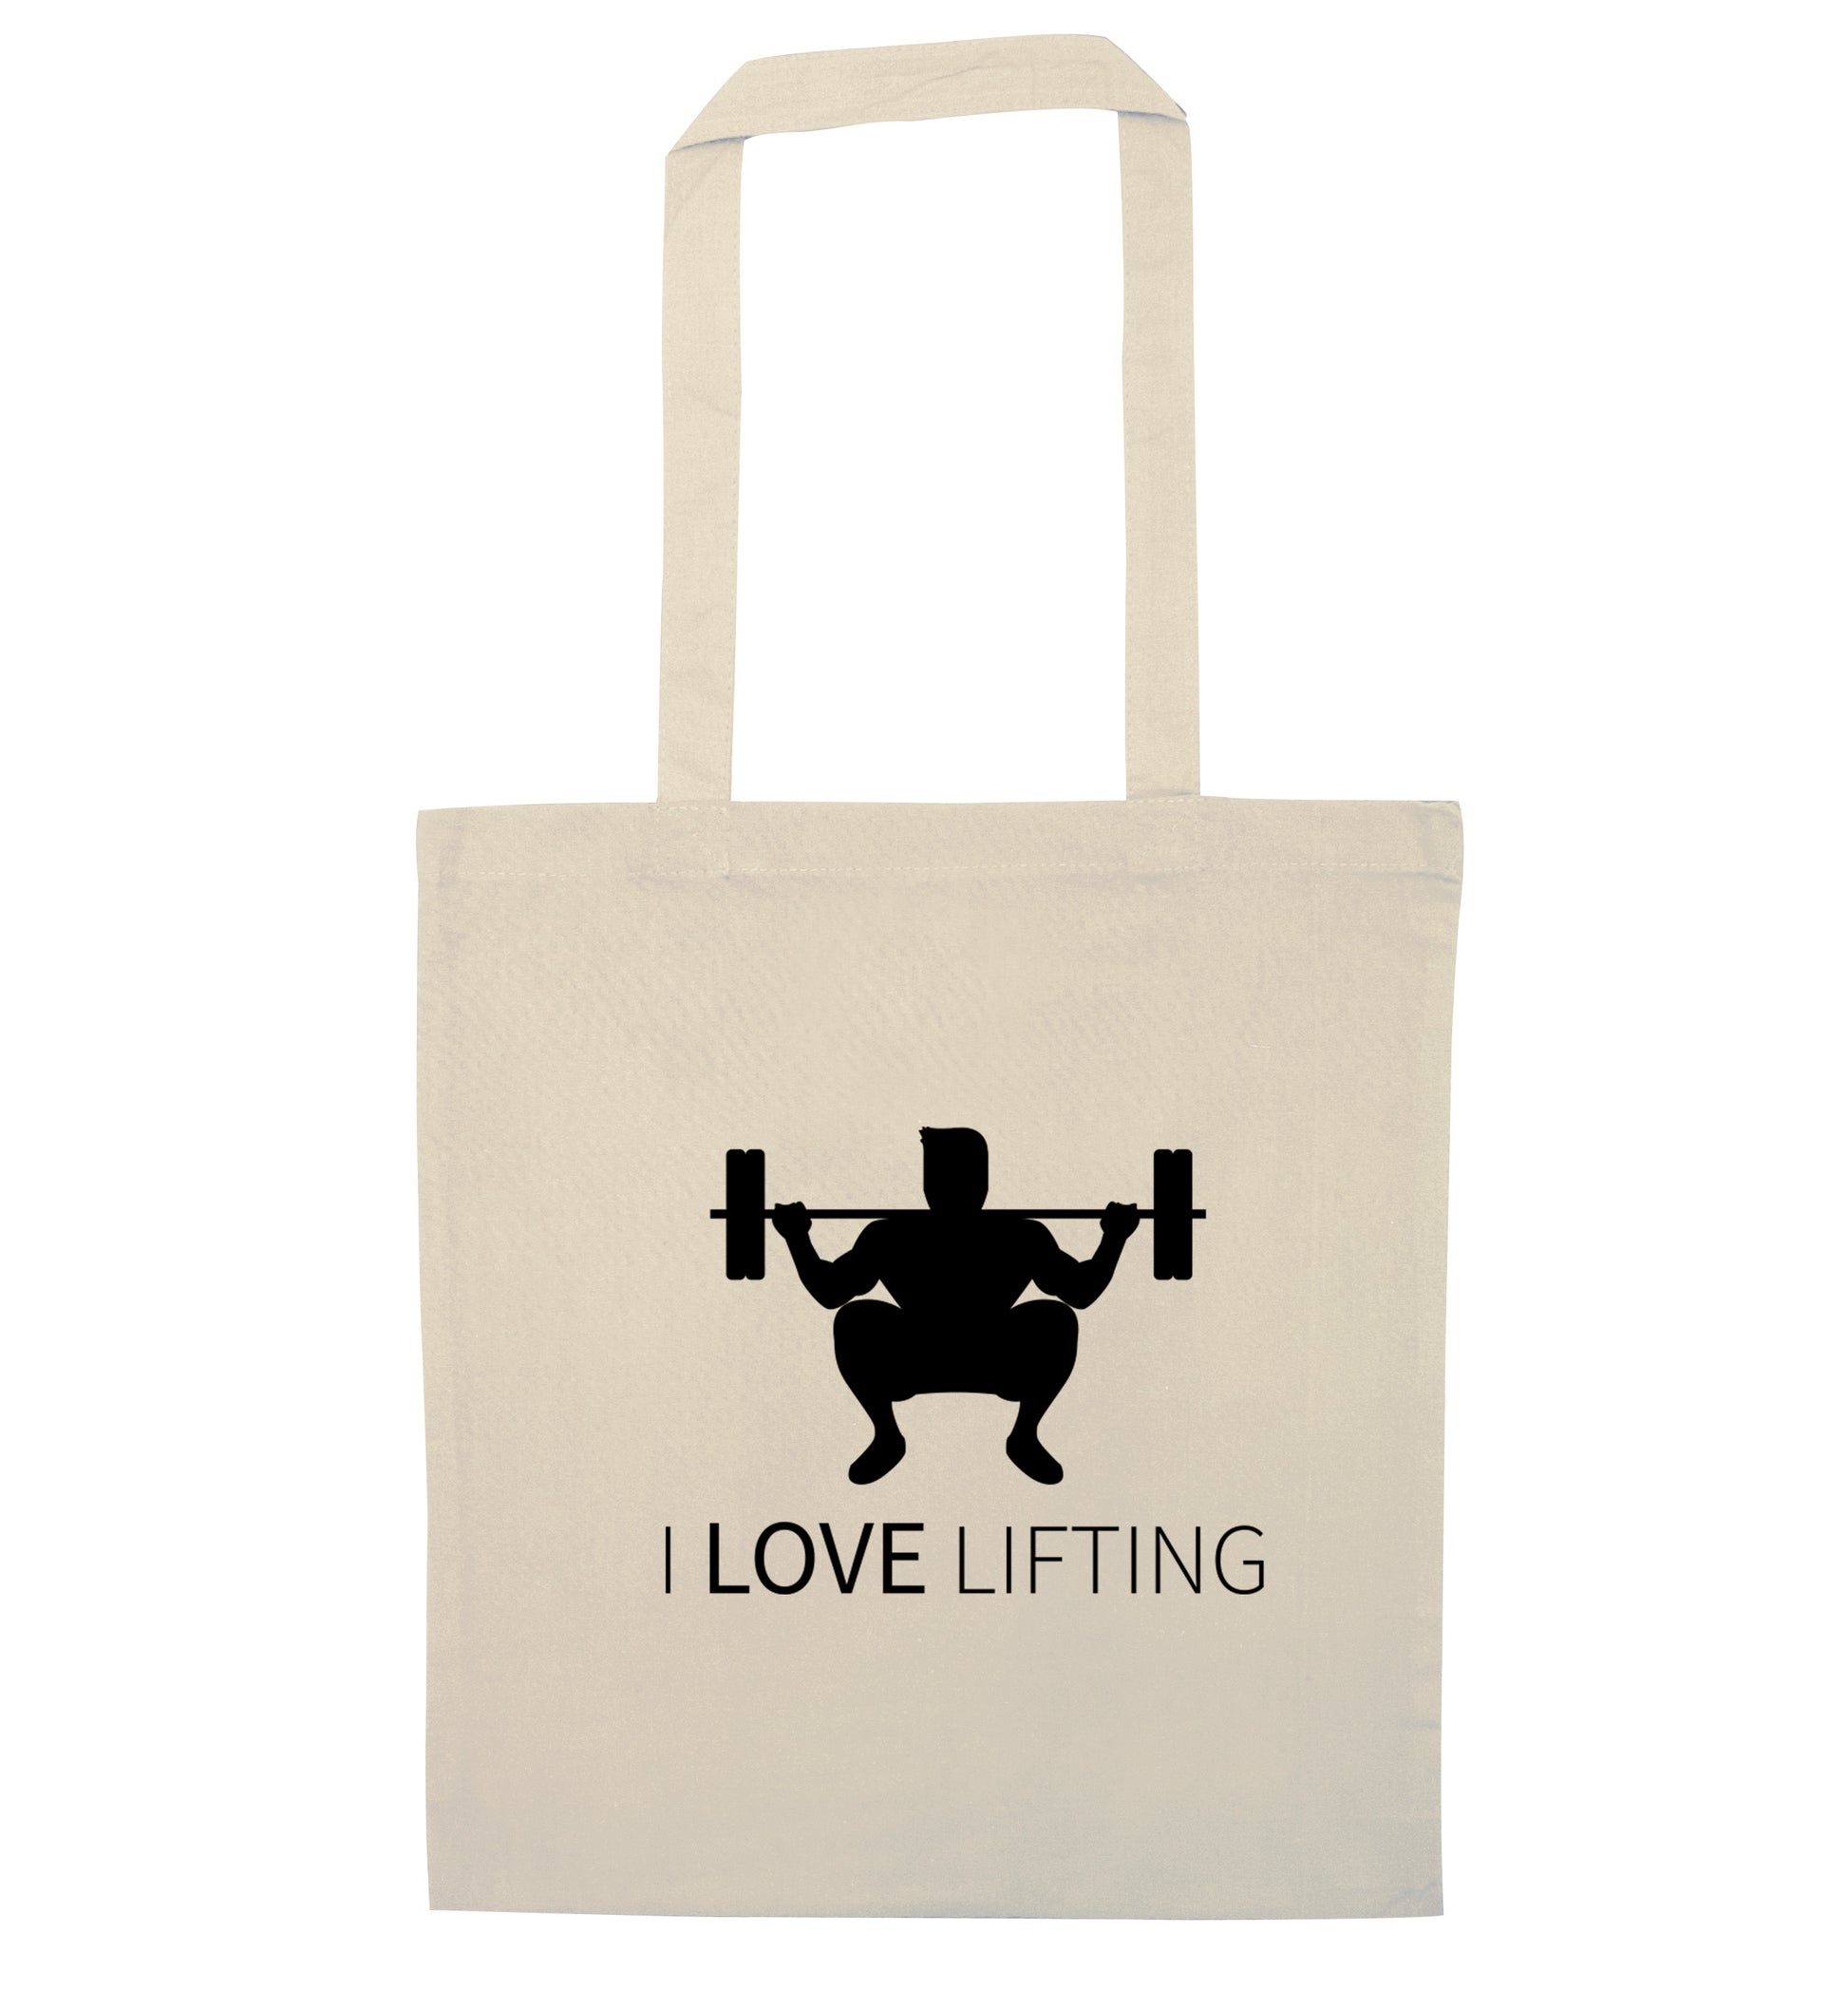 I Love Lifting natural tote bag